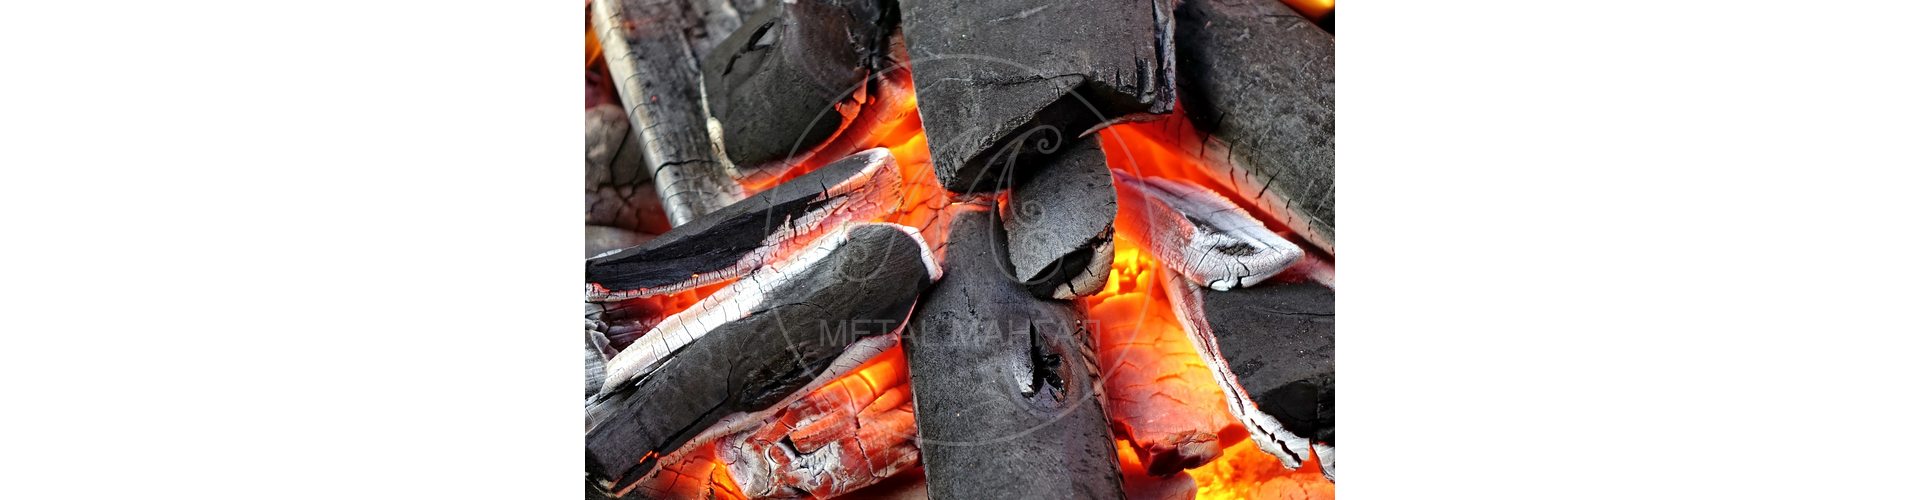 Как разжечь мангал на углях